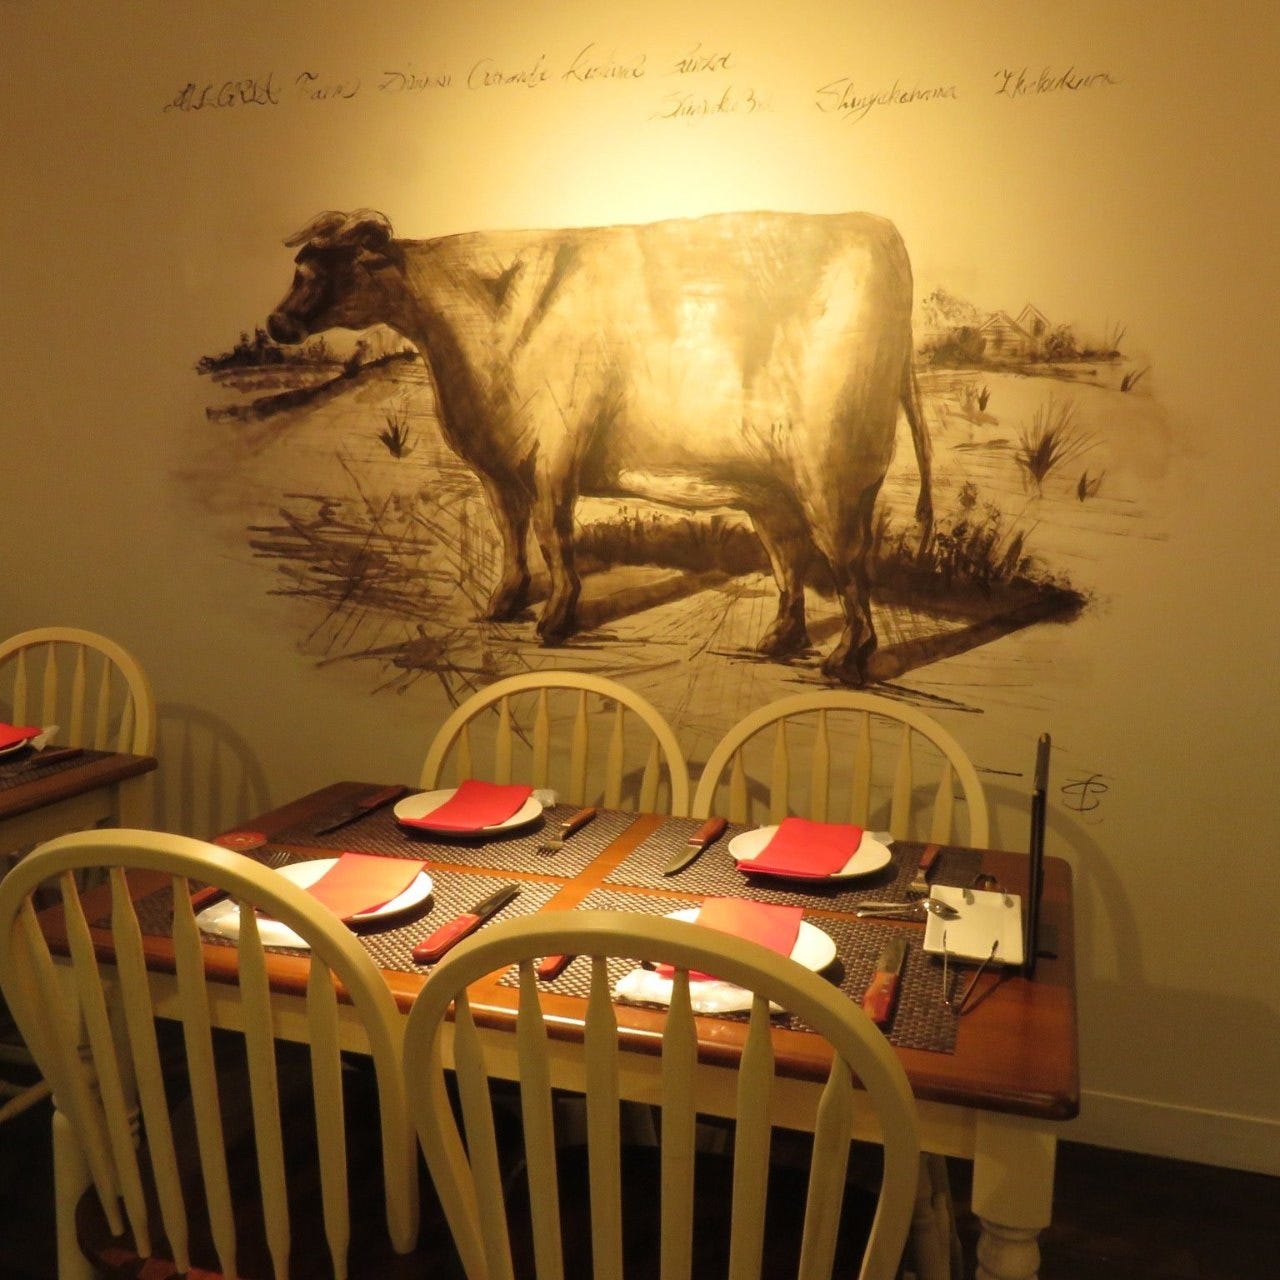 牛が描かれた壁を背景に、皿とナイフ・フォークとナフキンが4人分置かれた4人席